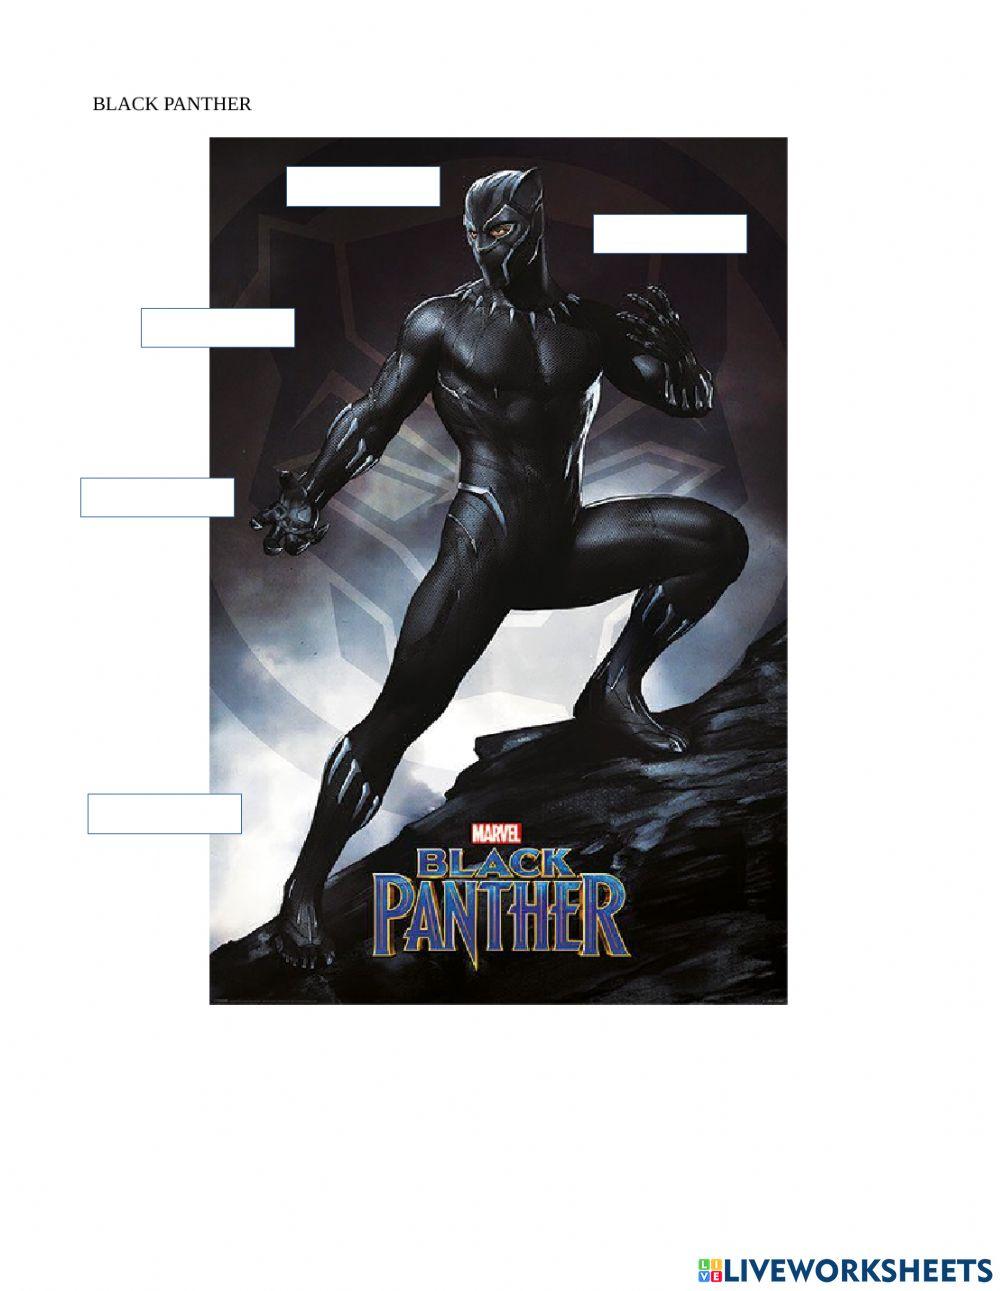 Descriptions: Black Panther